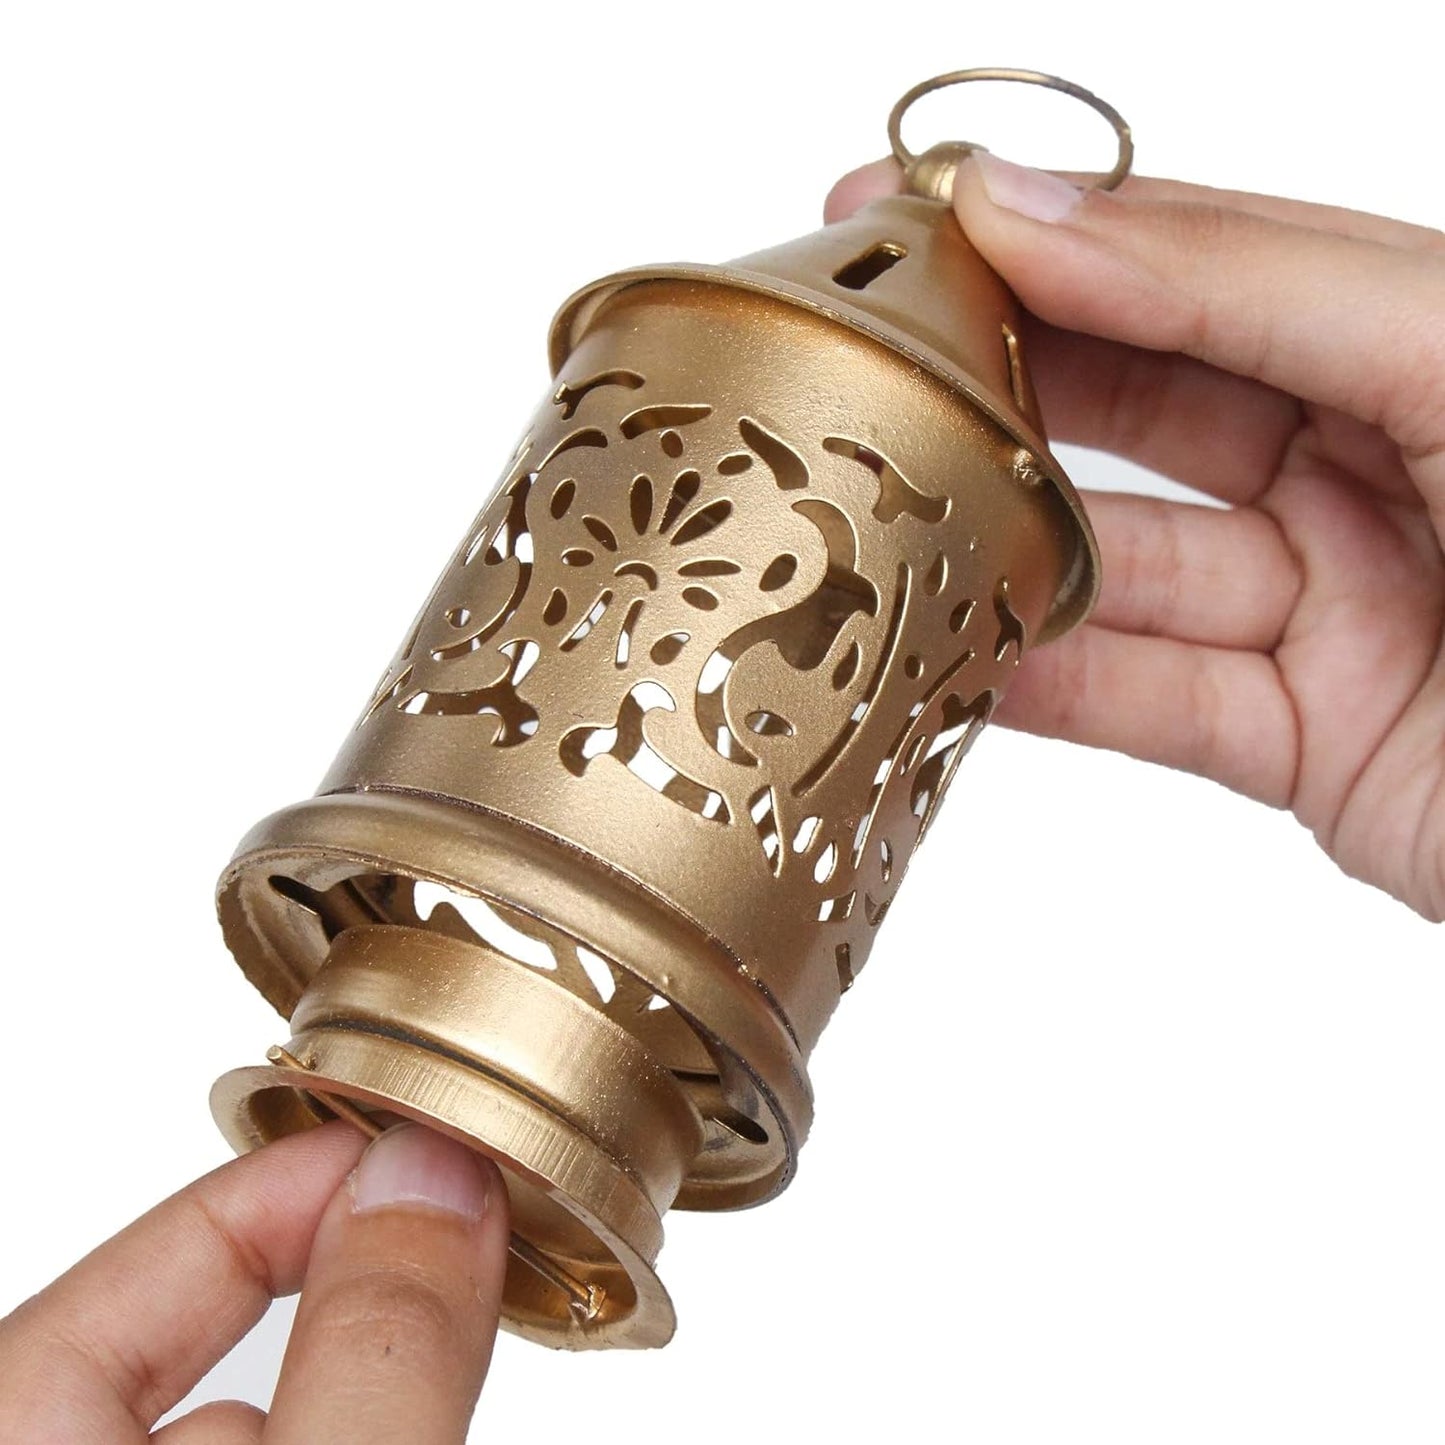 Rgyan Decorative Metal Hanging Lantern Gold / Lantern for Home Decoration (Pack of 2)